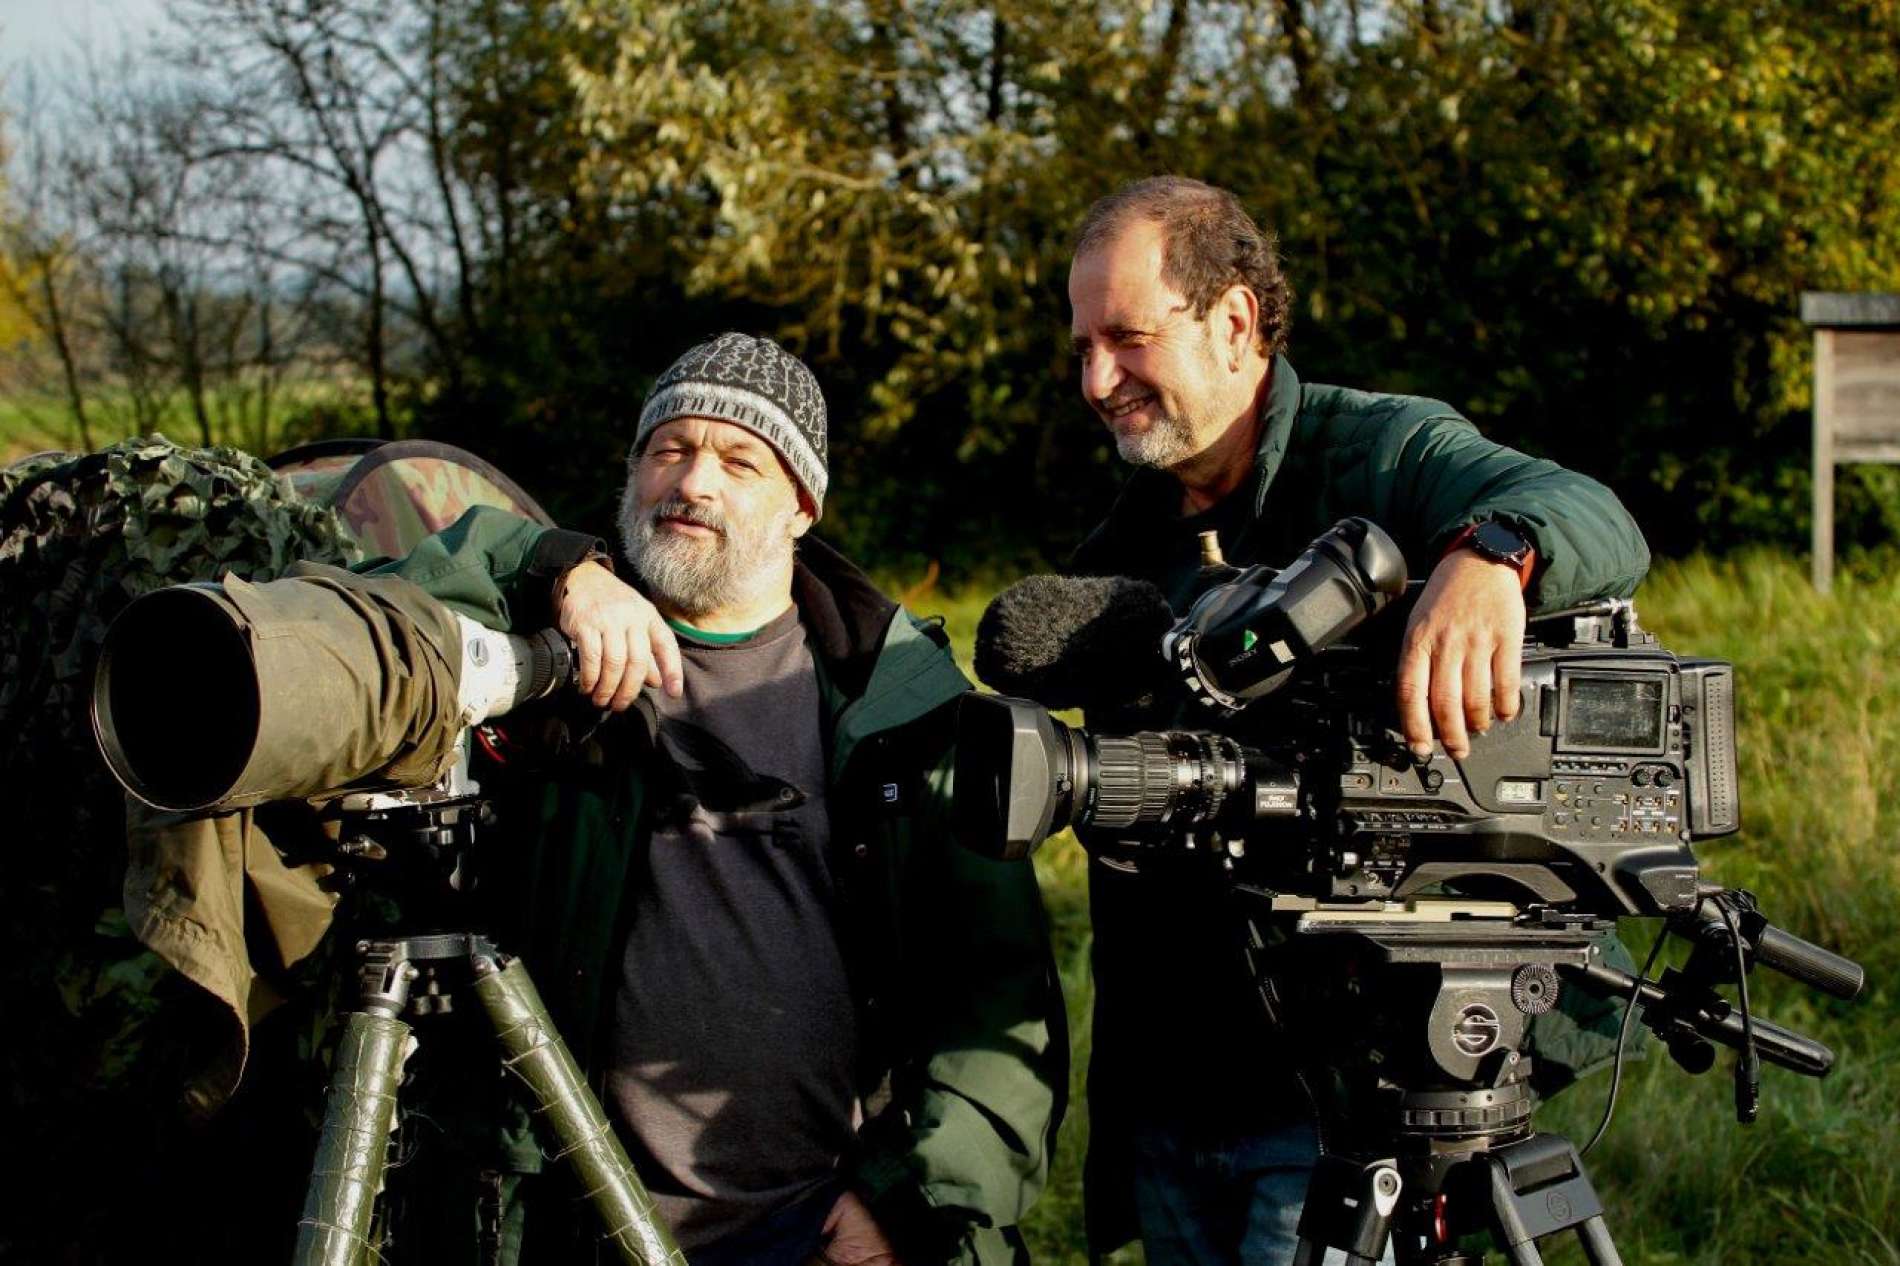 V. l.: Josef Limberger beim Filmdreh im Naturschutzgebiet „Koaserin“ in Peuerbach mit Kameramann Claus Muhr